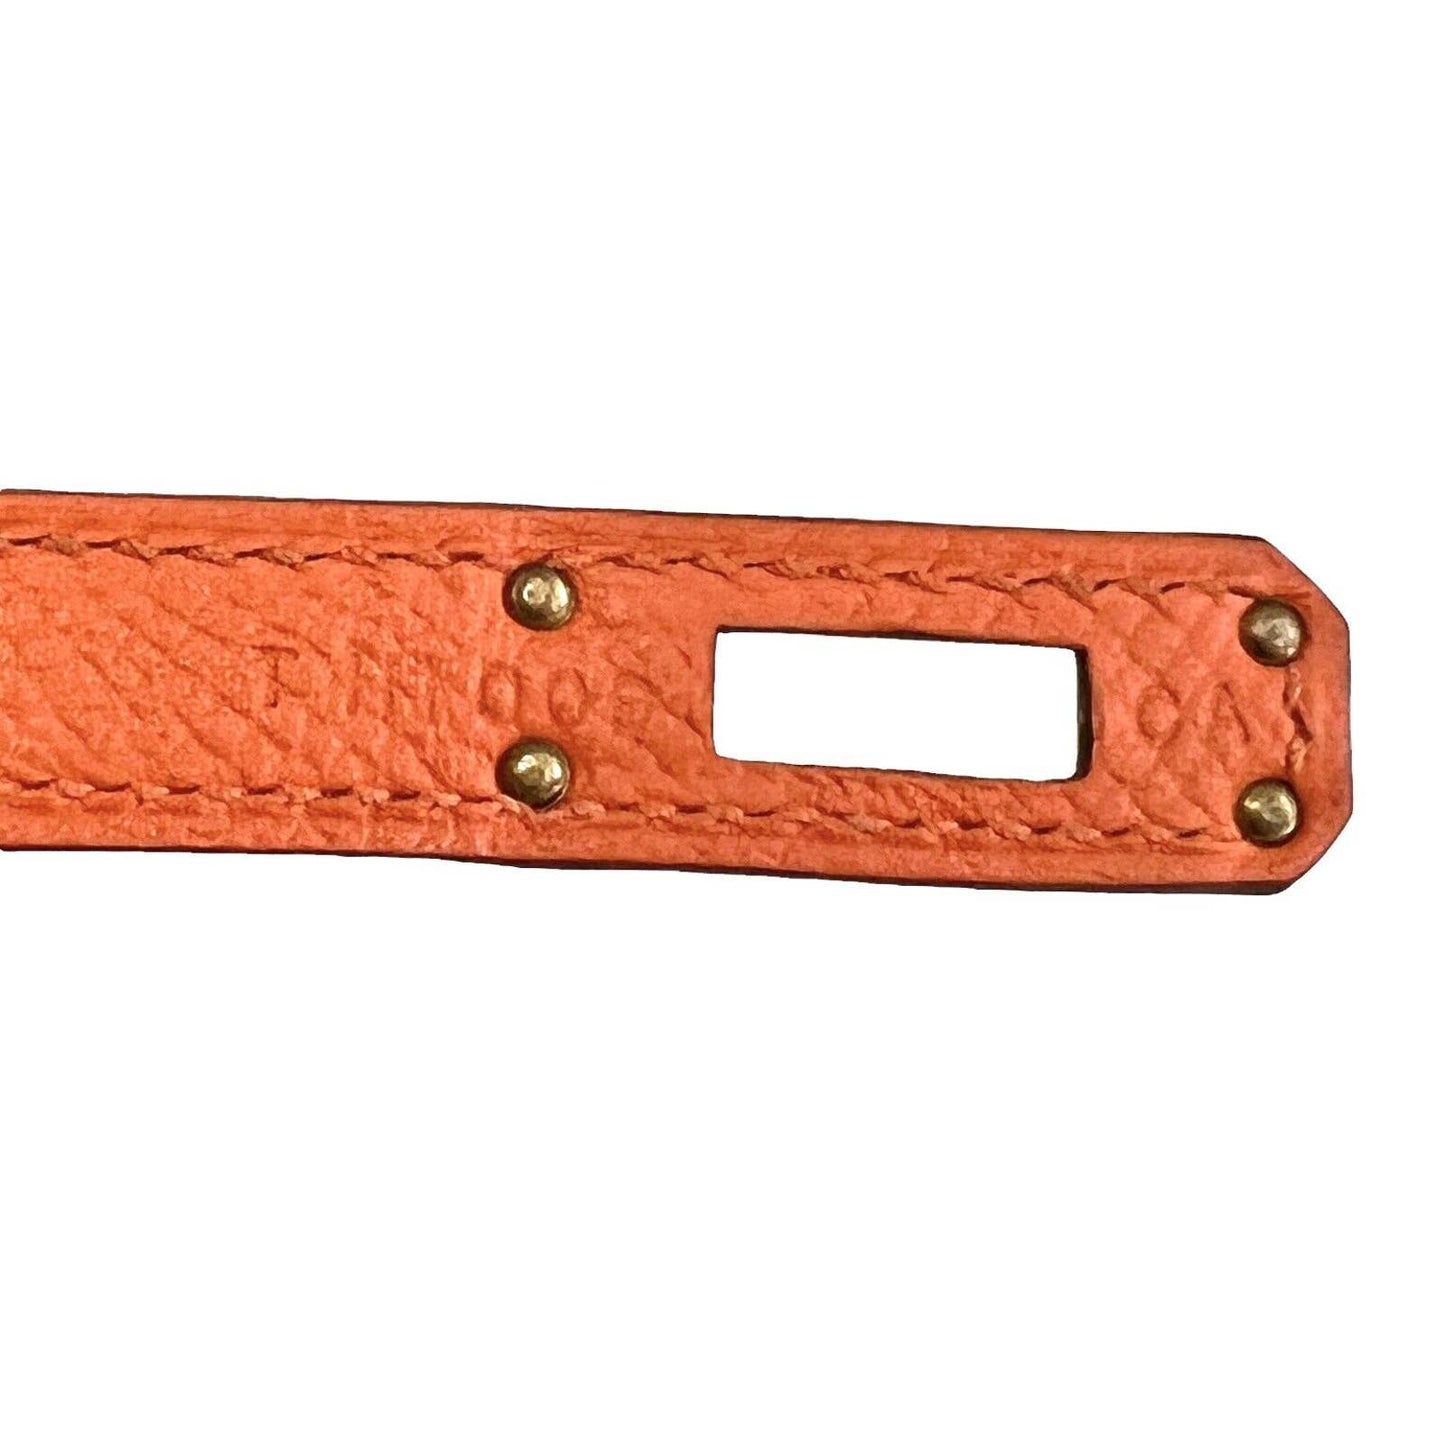 Hermes Kelly 25 Orange Sellier Epsom Leather Shoulder Bag Gold Hardware